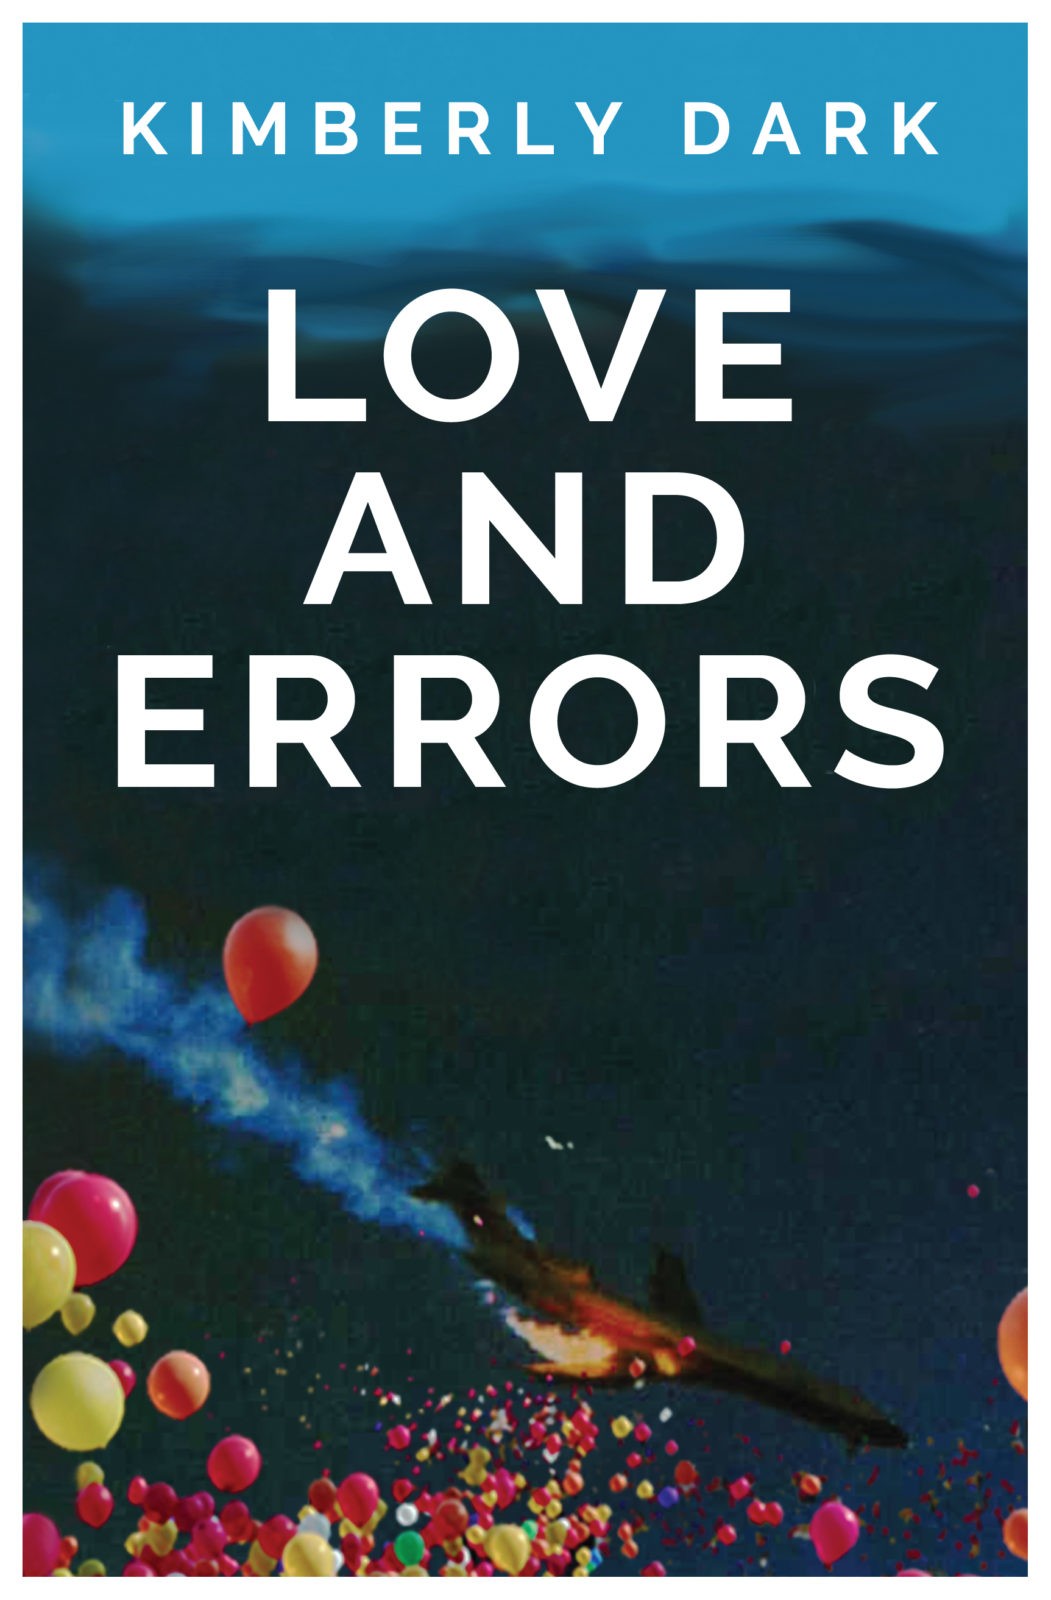 Love and Errors by Kimberly Dark